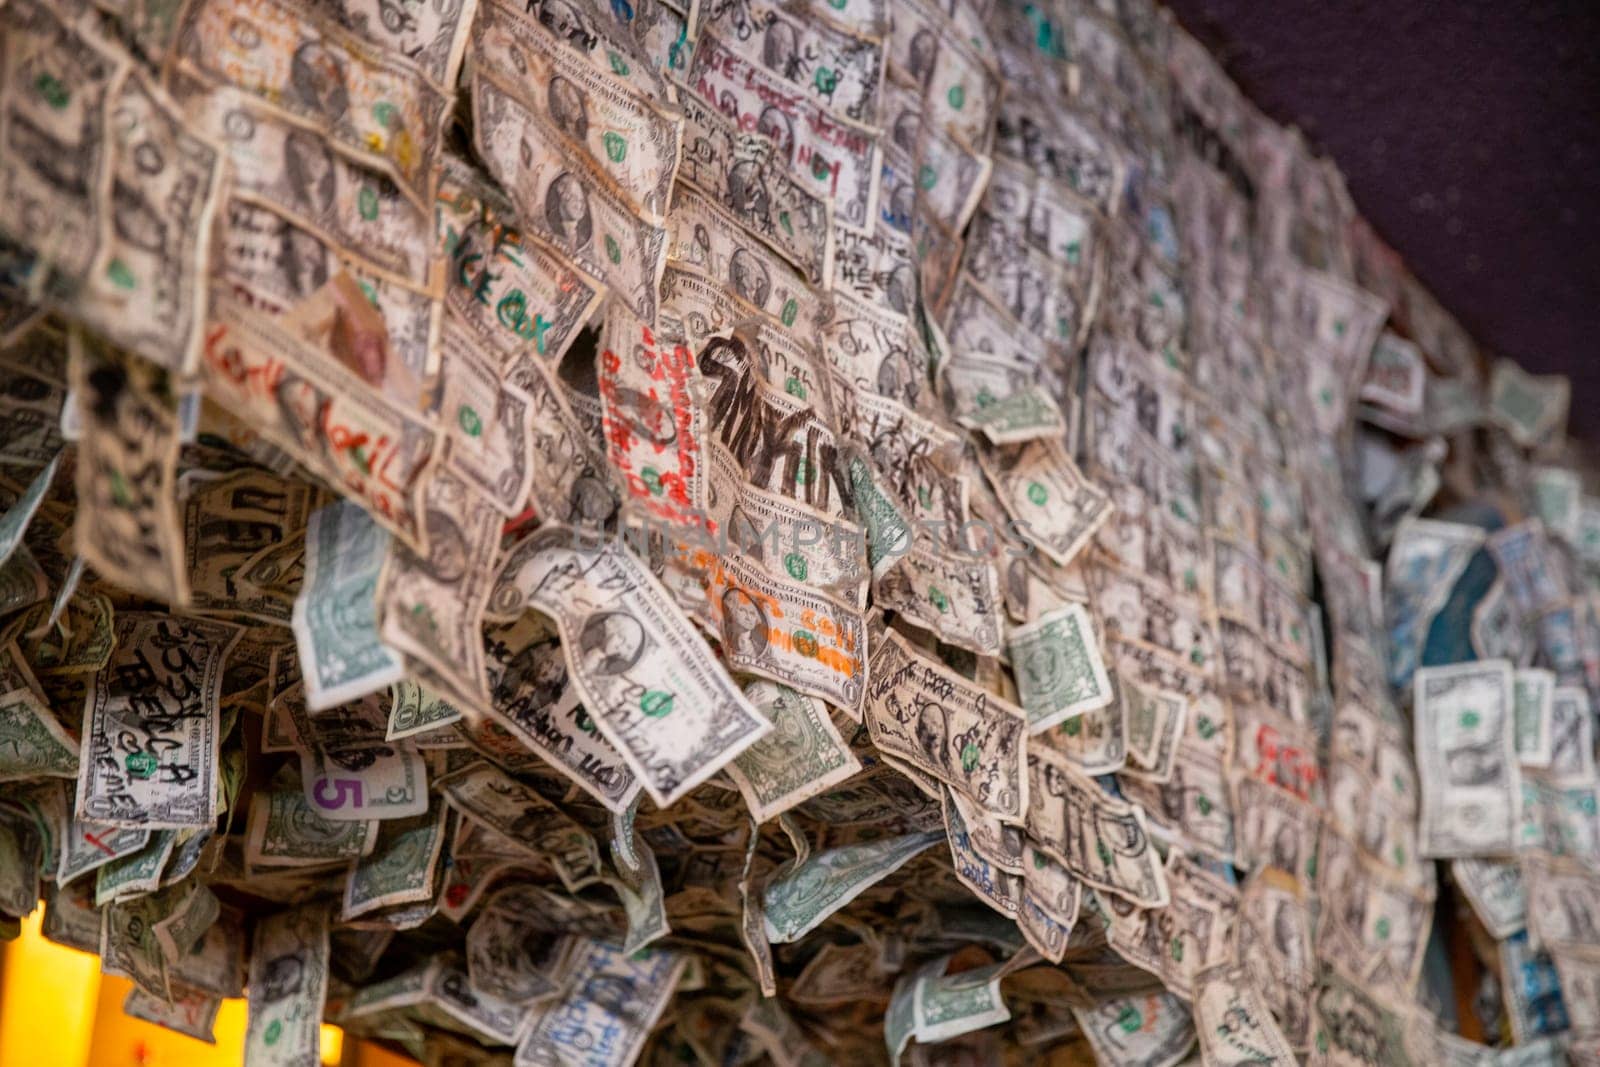 Wall of Dollar Bill Tips Signed